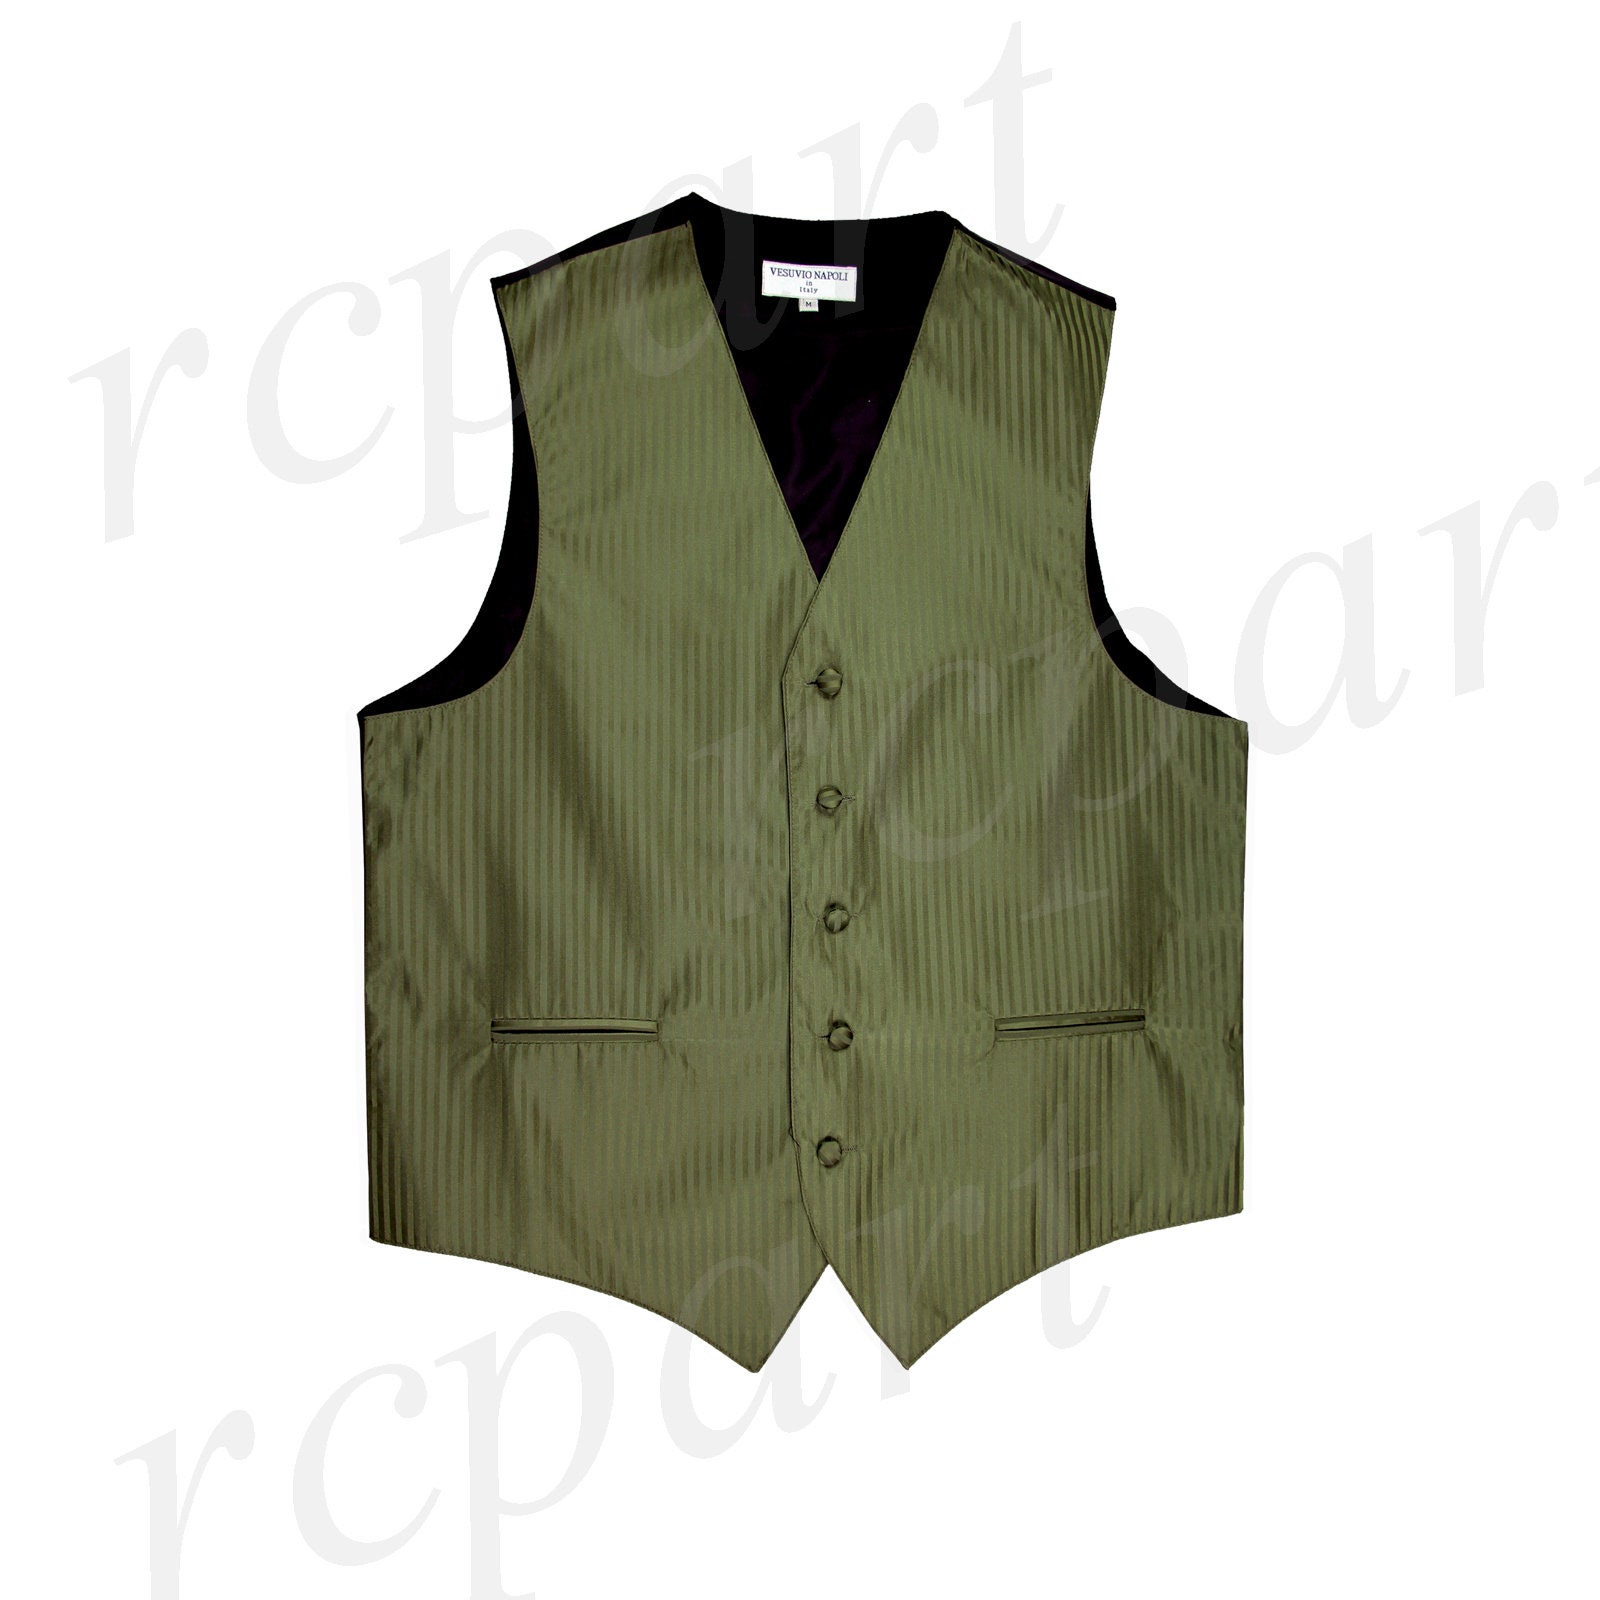 Men's Vertical stripes Tuxedo Vest Waistcoat & 2.5" Skinny Slim Tie Olive Green 